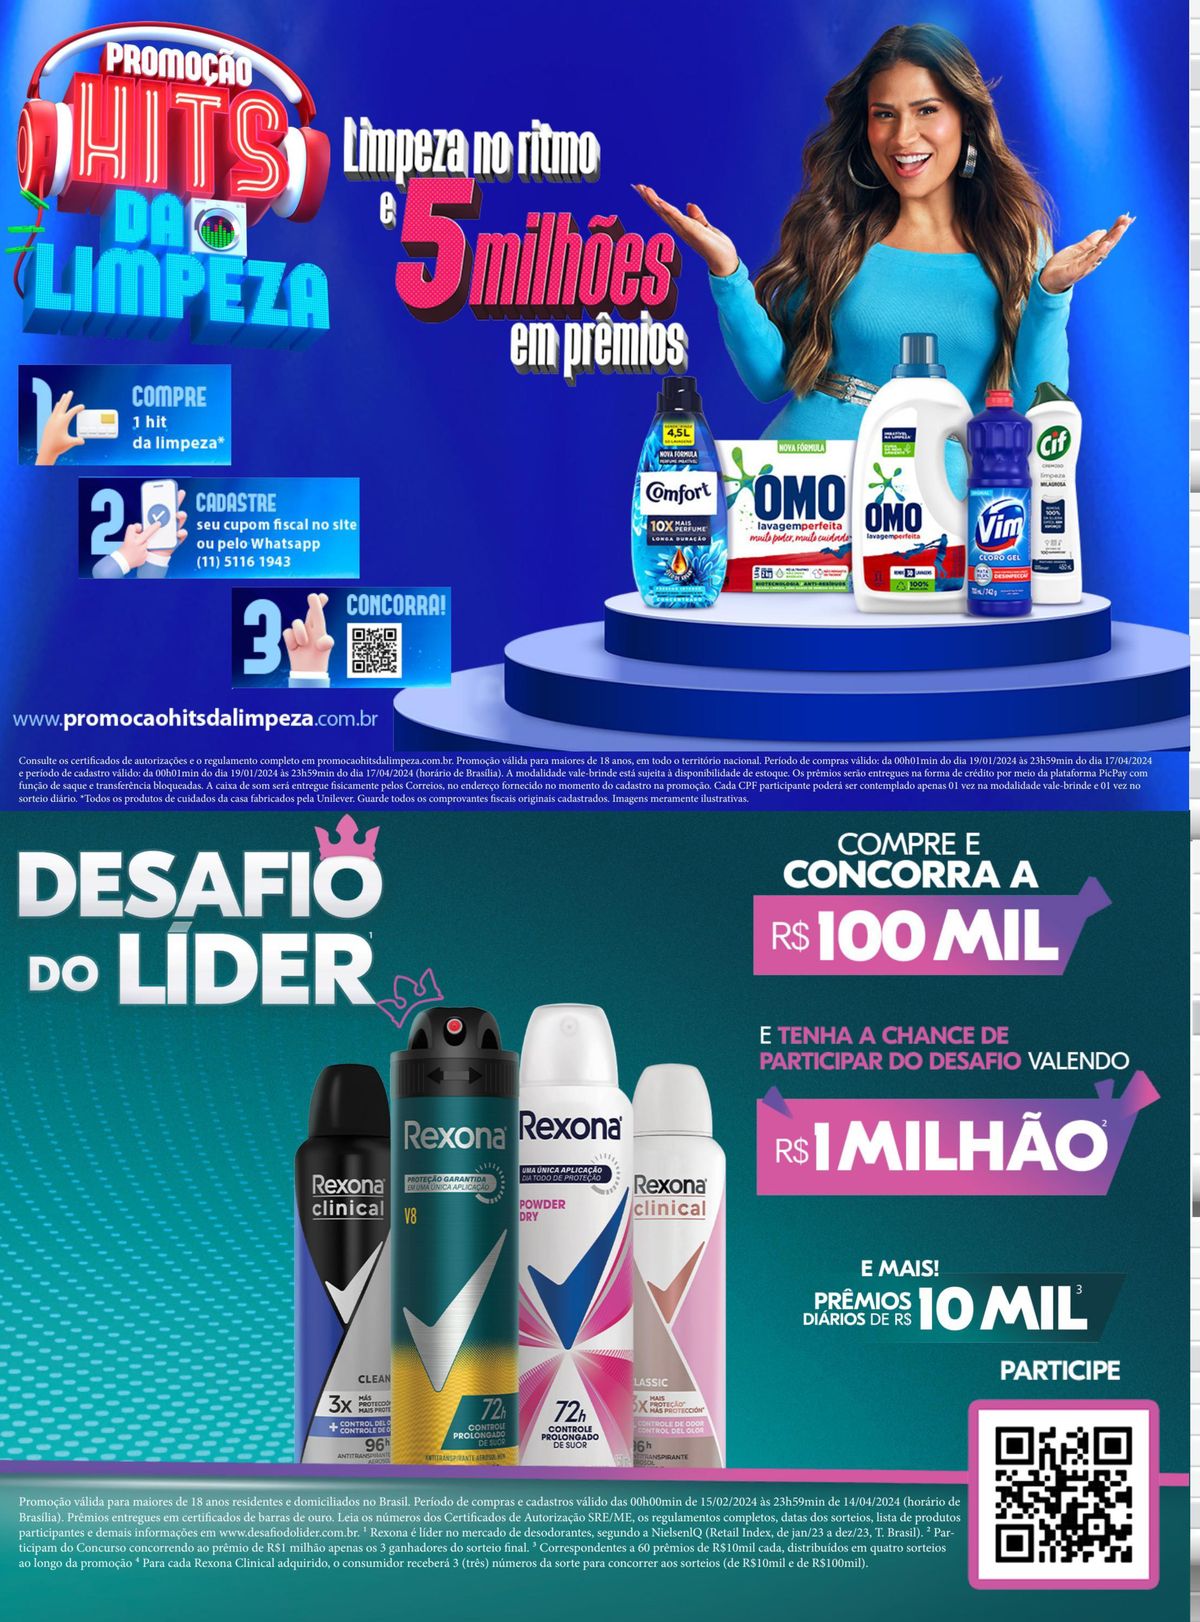 Promoção Rexona Clinical em Supermercados